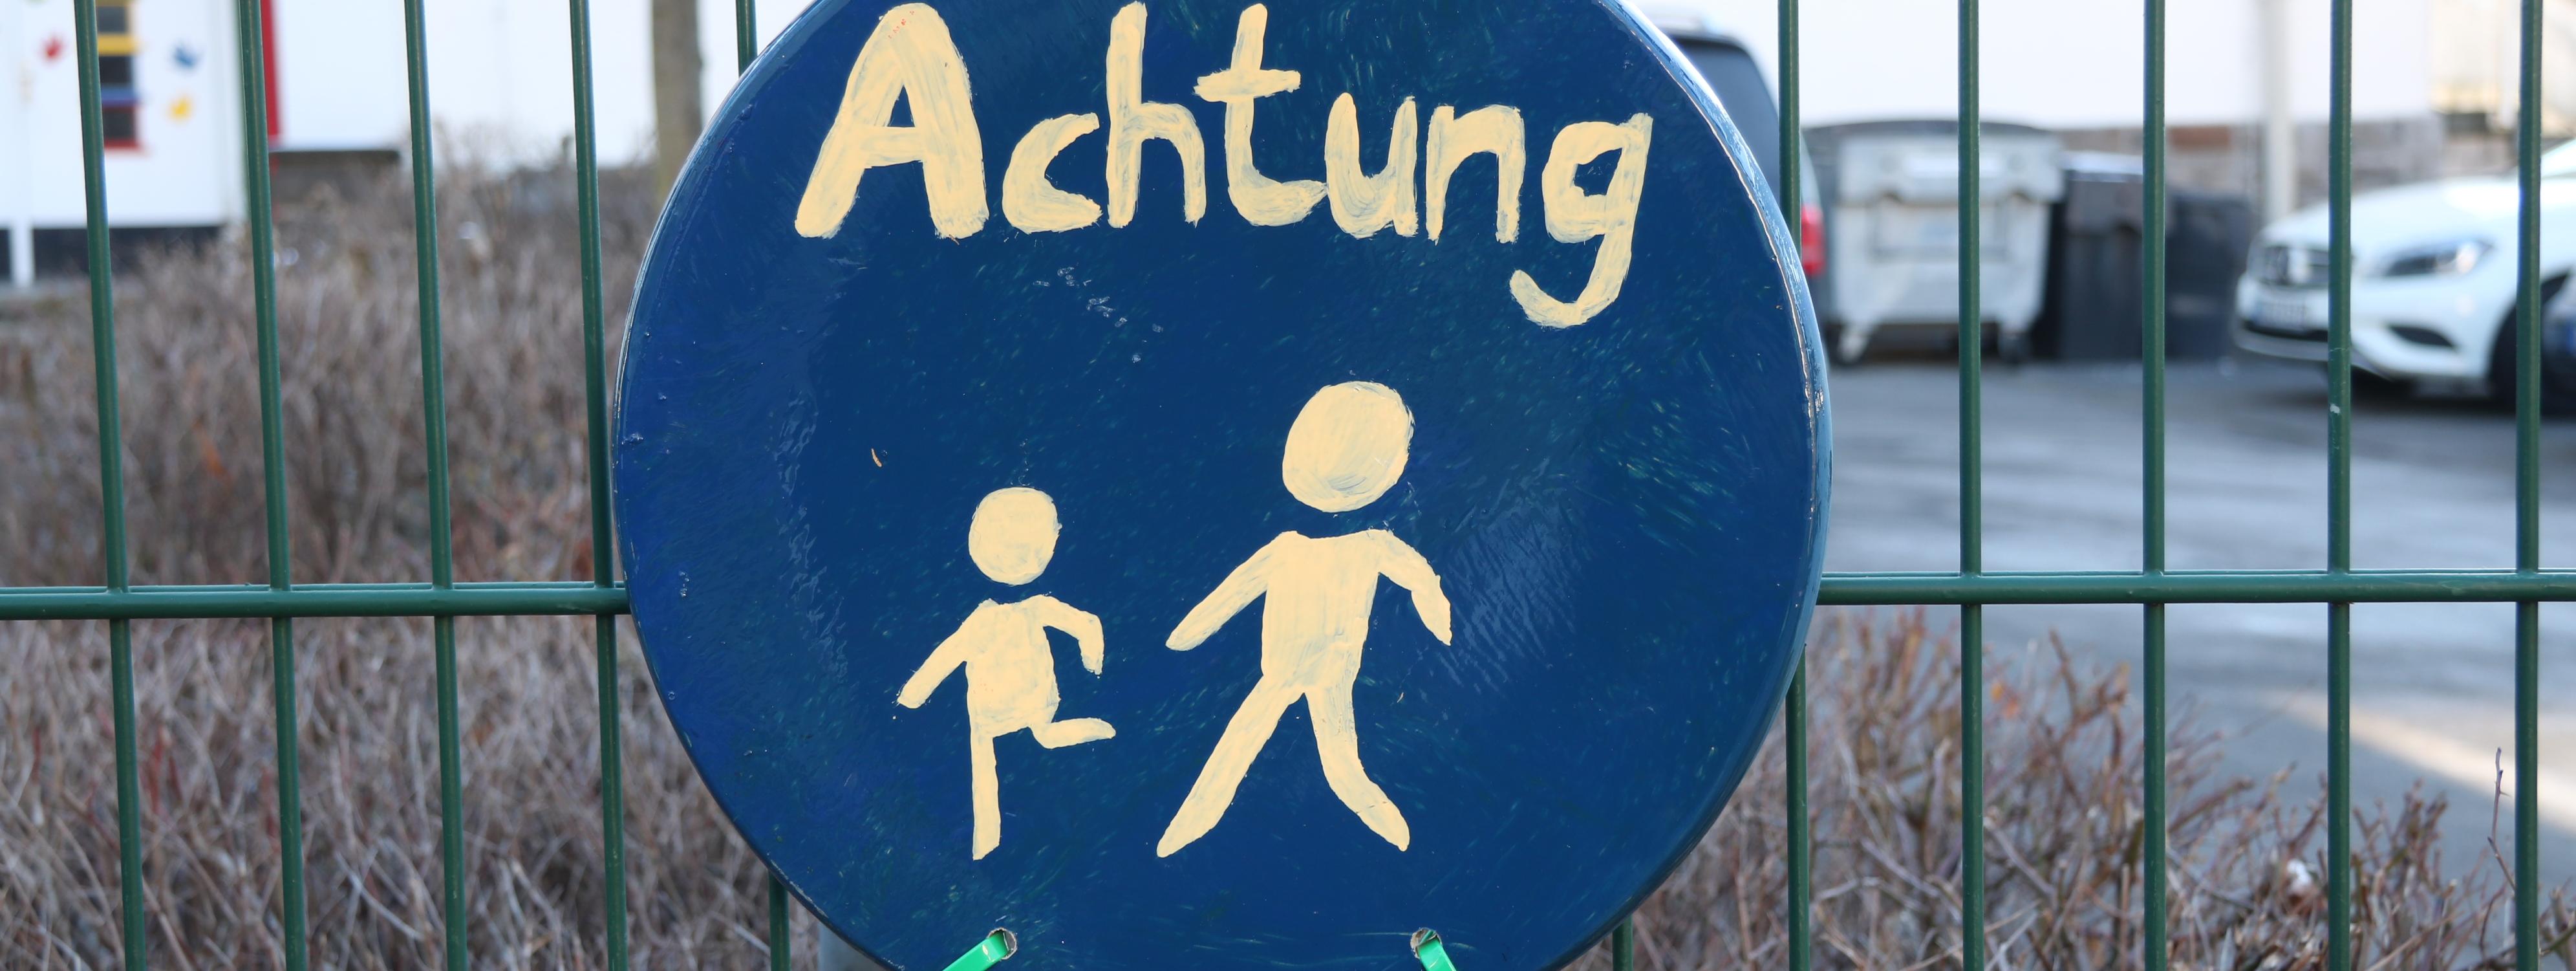 An einem grünen Metallzaun vor der Josefschule hängt ein selbstgemaltes Schild. Es ist rund, darauf sind zwei laufende Strichmännchen in weißer Farbe, darüber steht das Wort "Achtung".